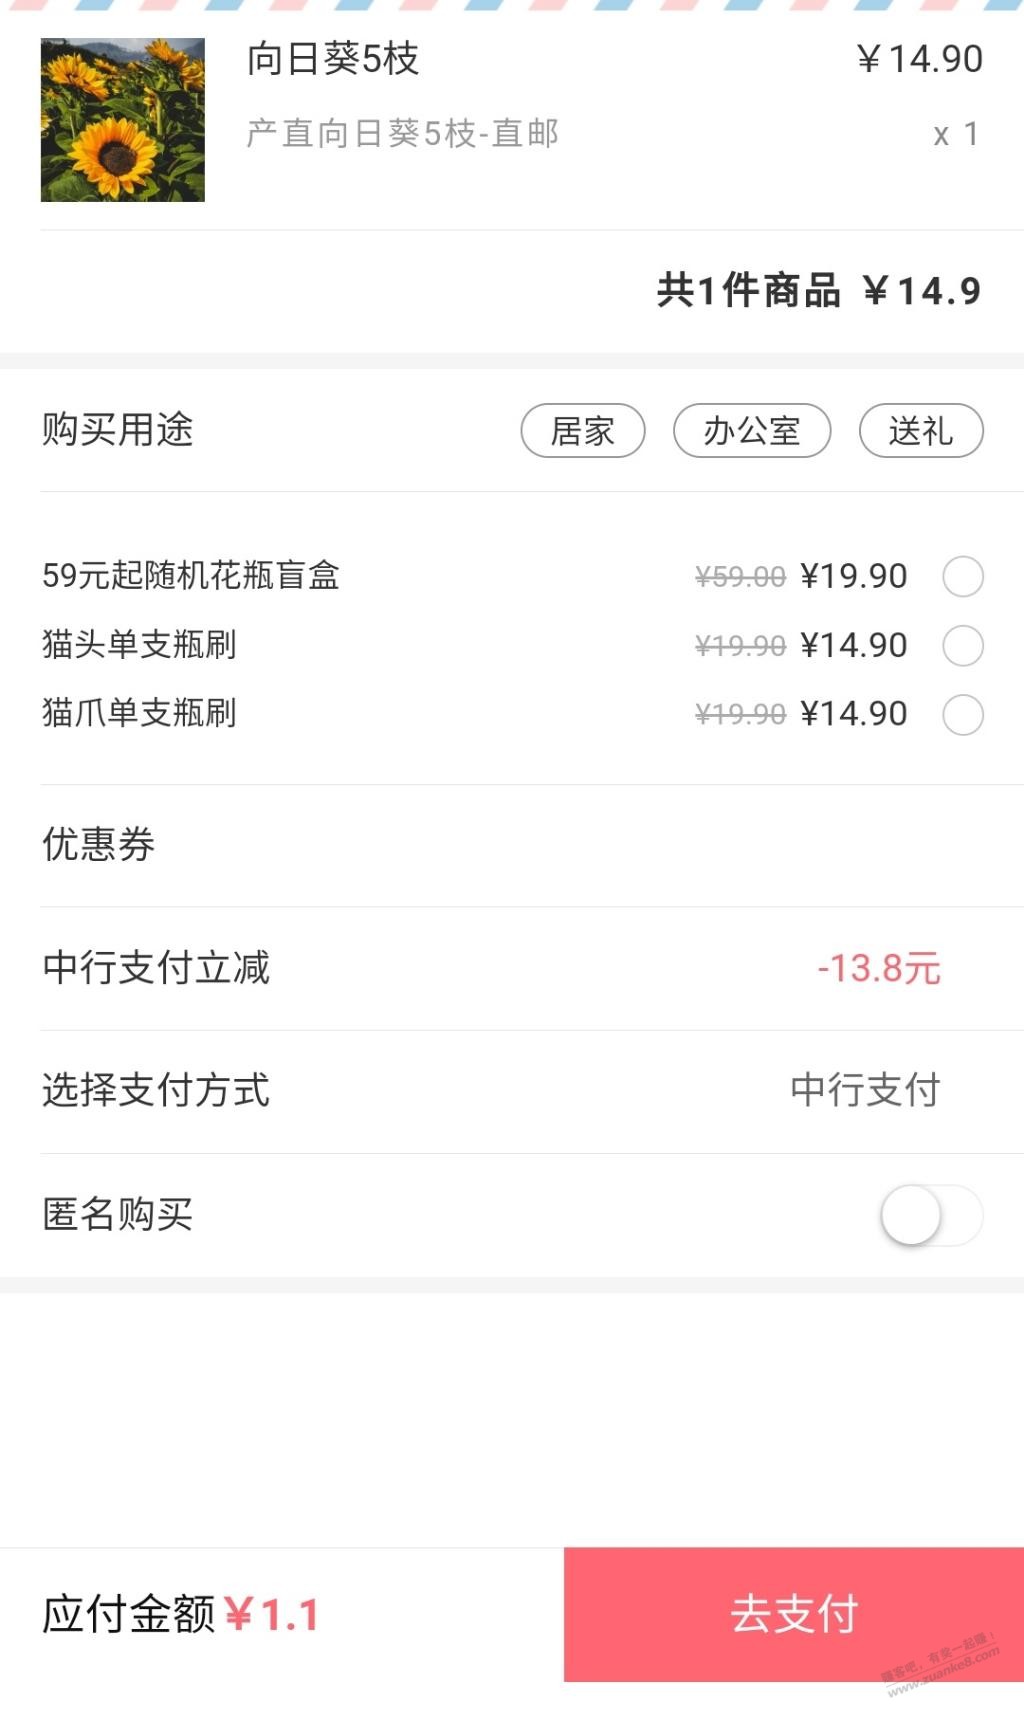 5支向日葵1.1元-惠小助(52huixz.com)